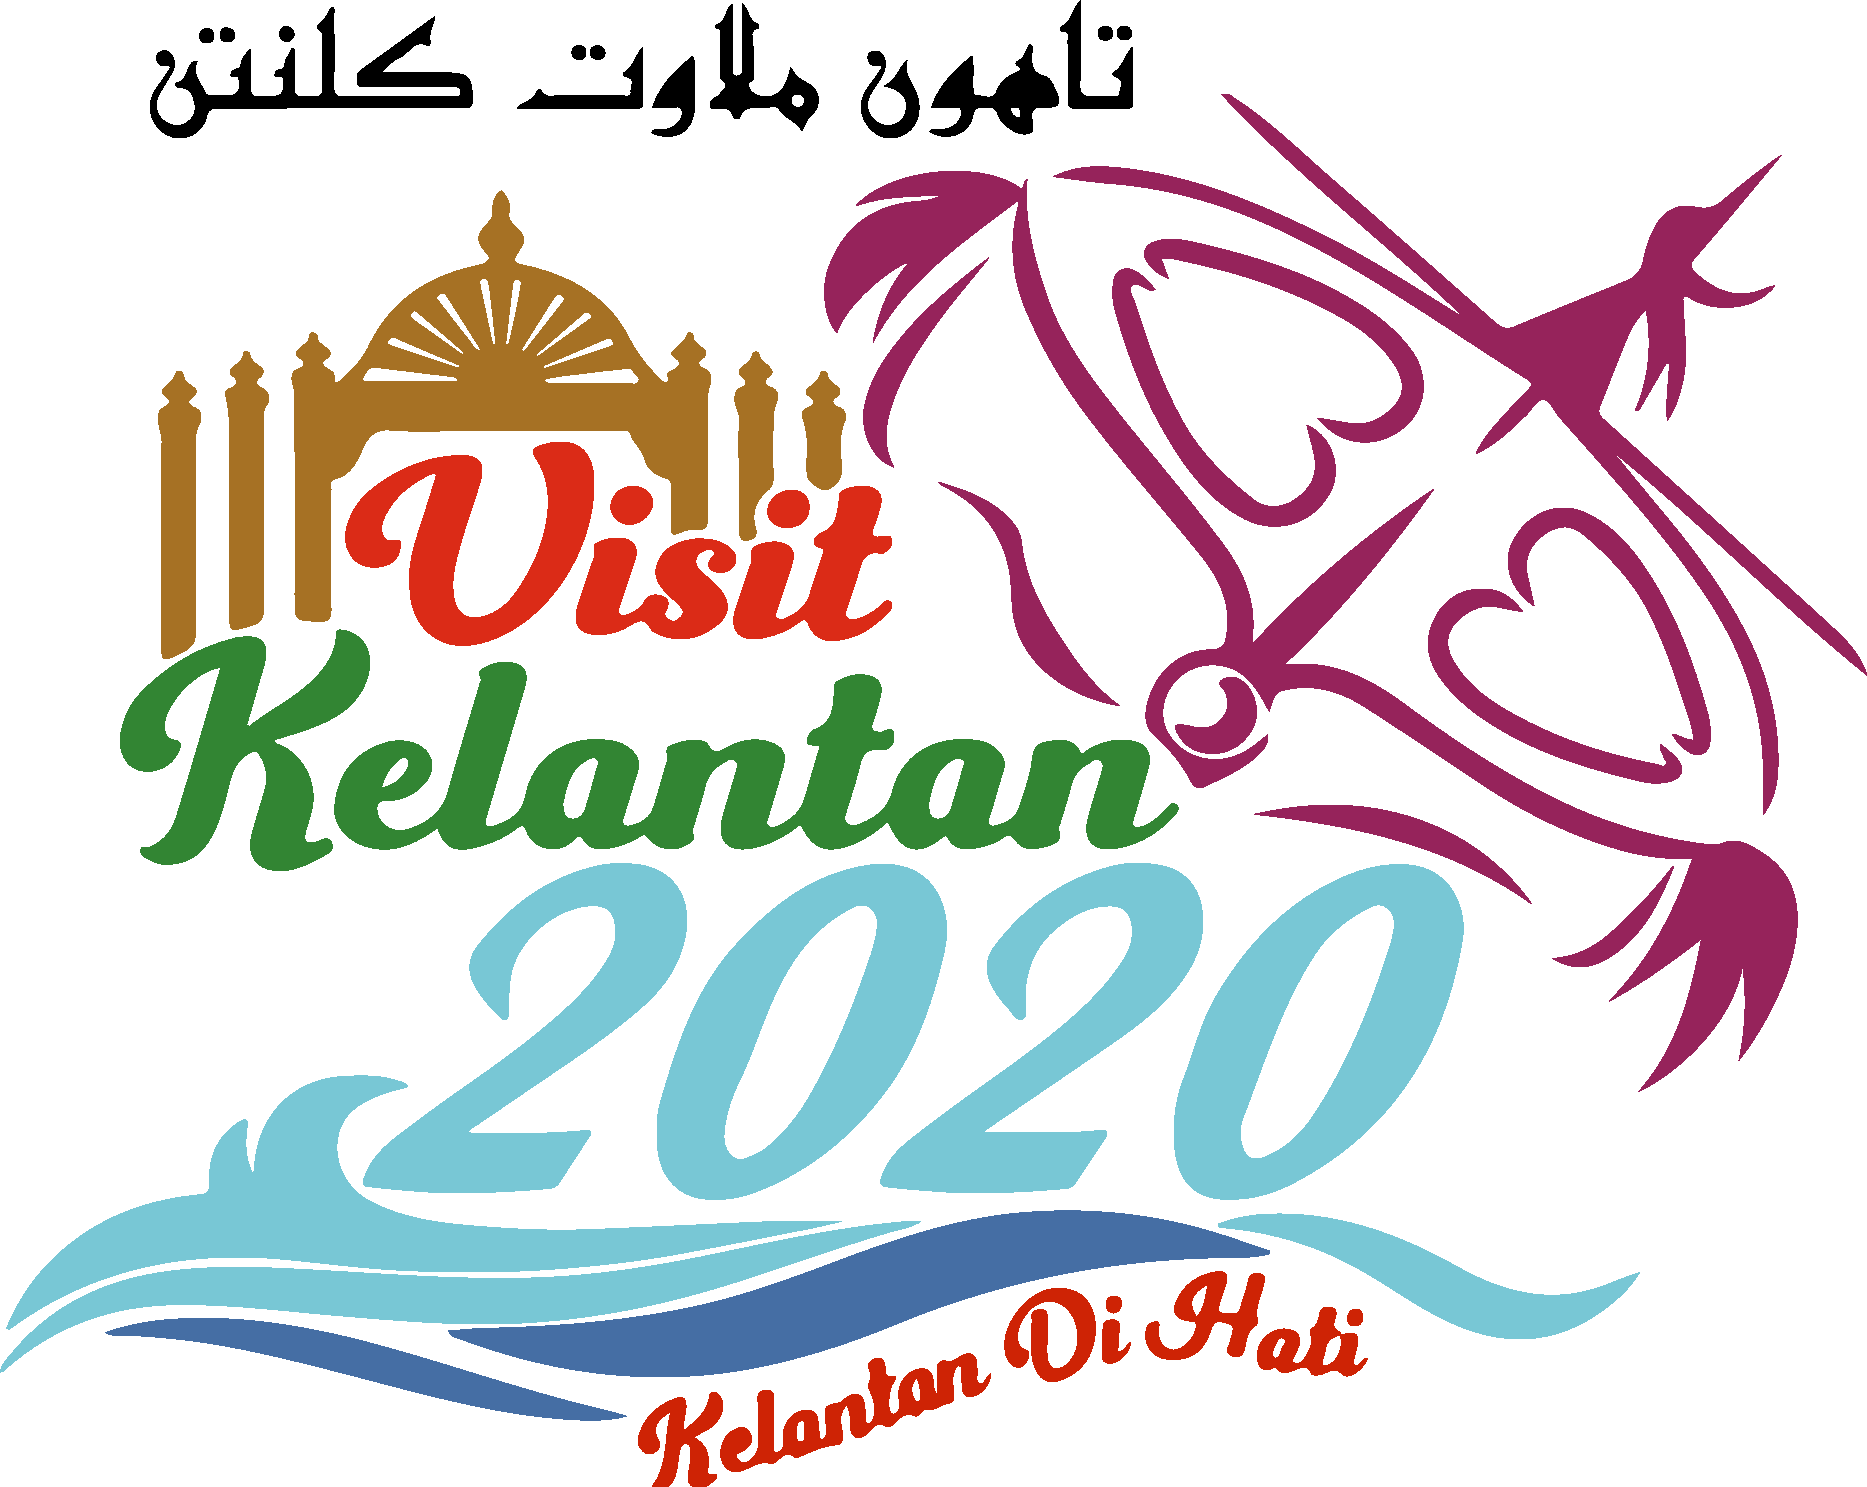 Visit Kelantan 2020 Logo Vector